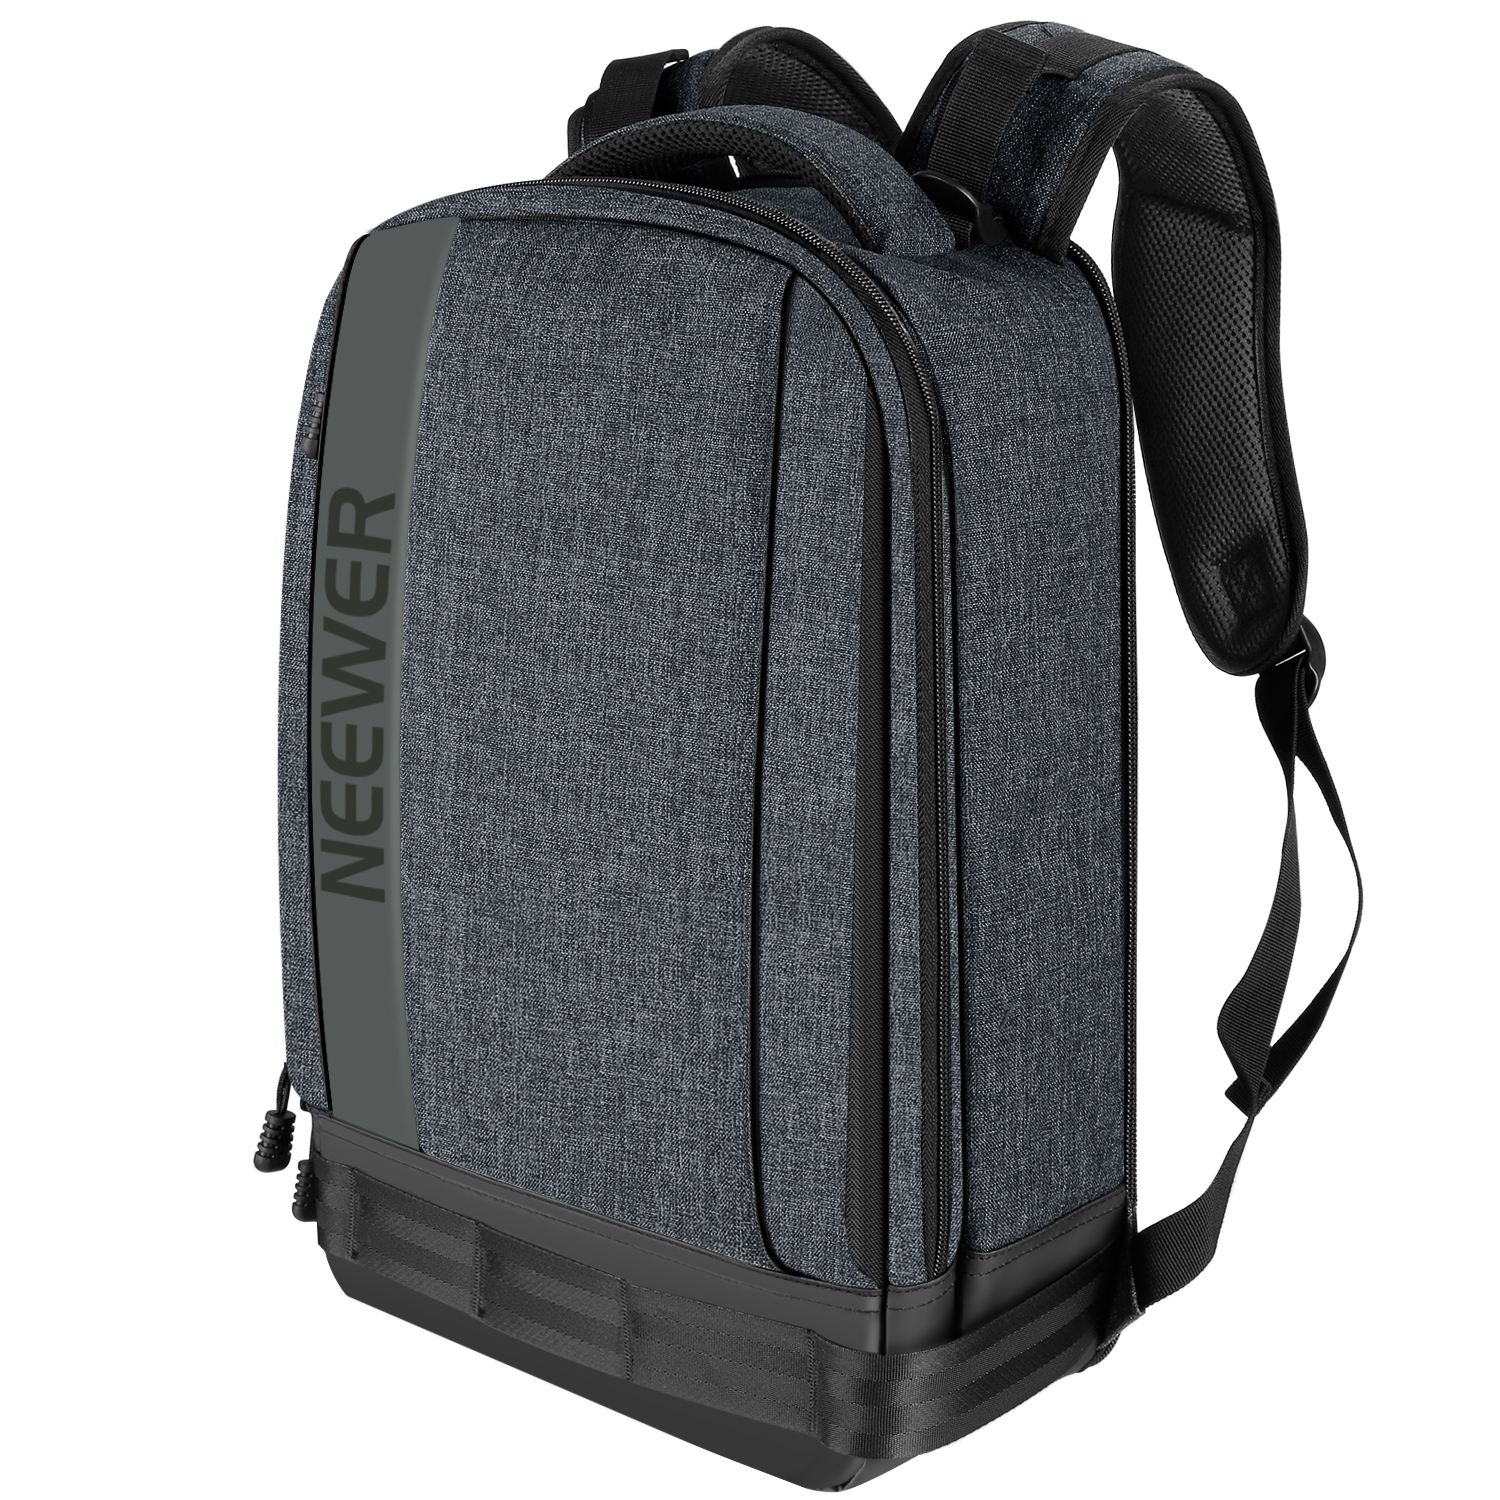 neewer camera backpack